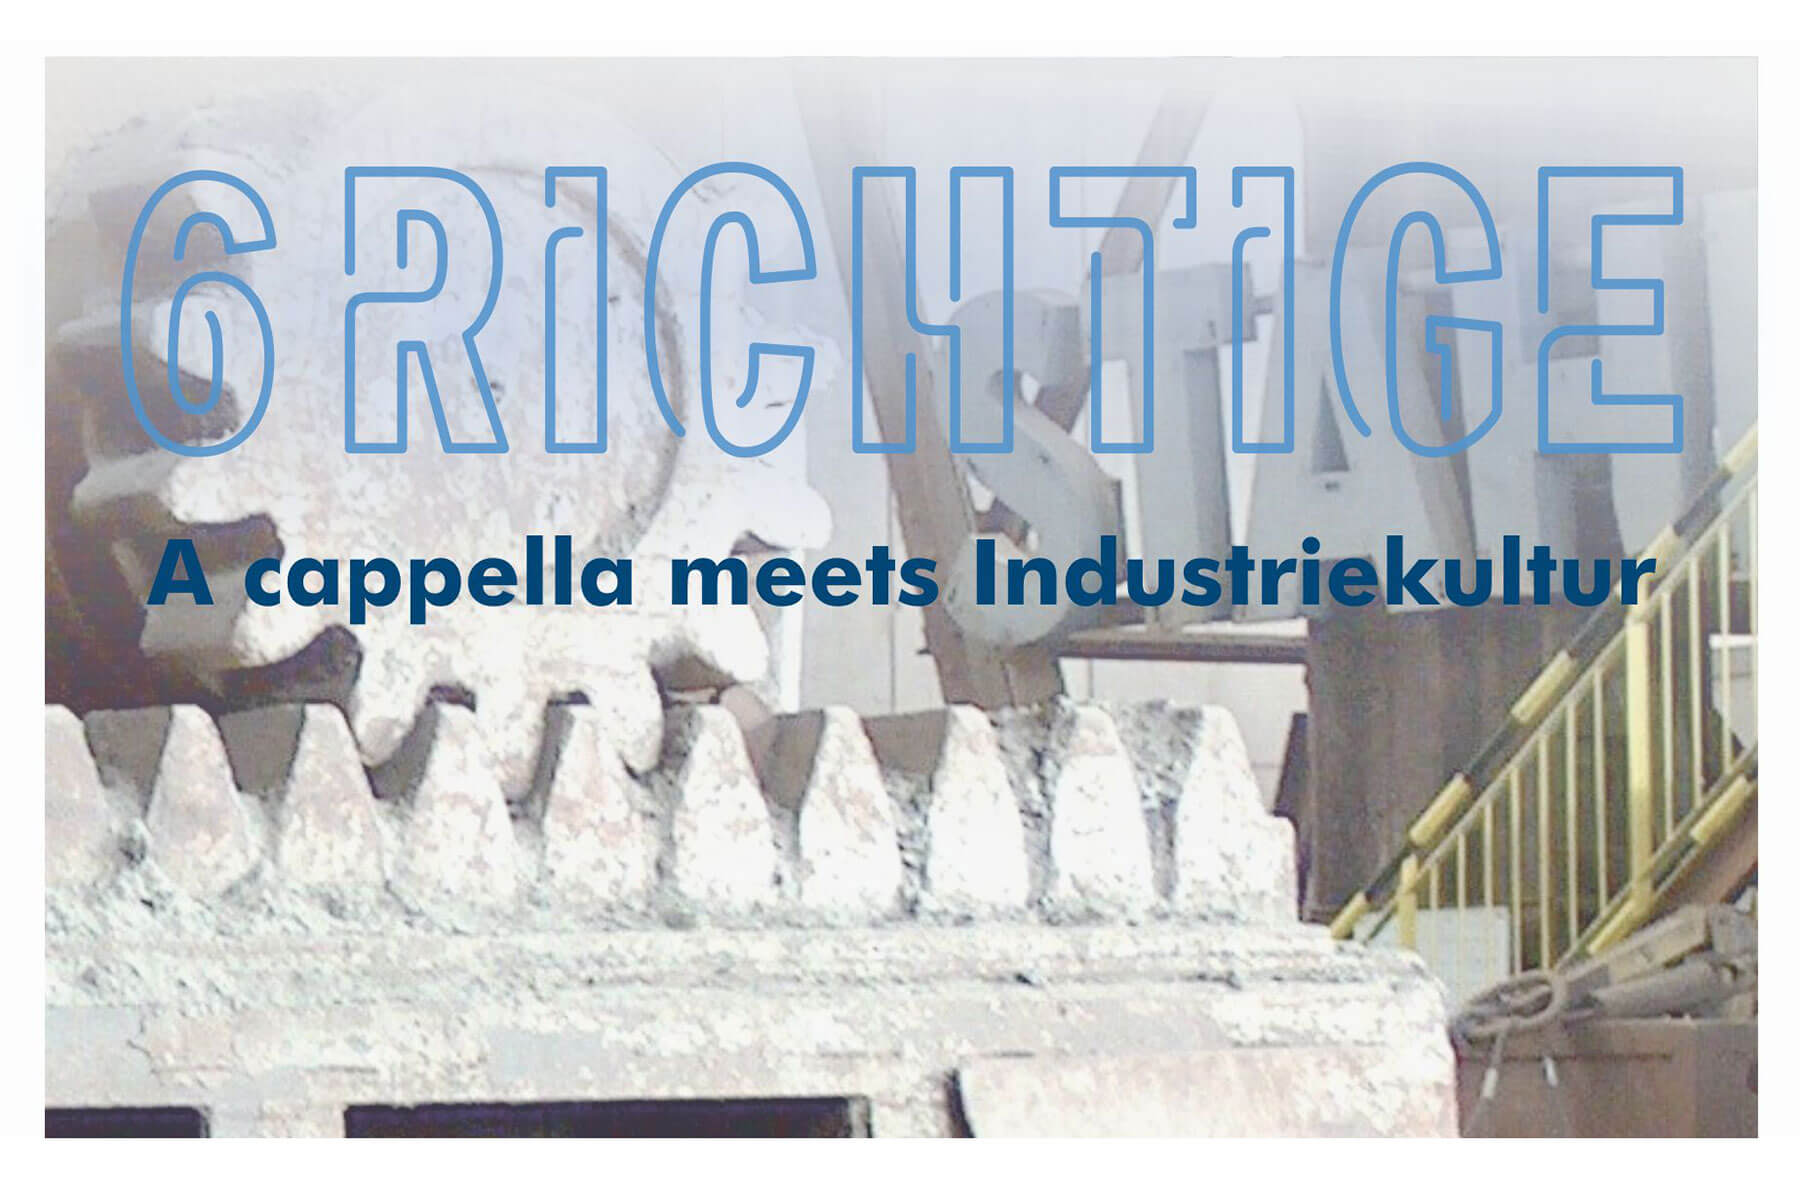 A Capella im Industriemuseum – 6Richtige kommen!